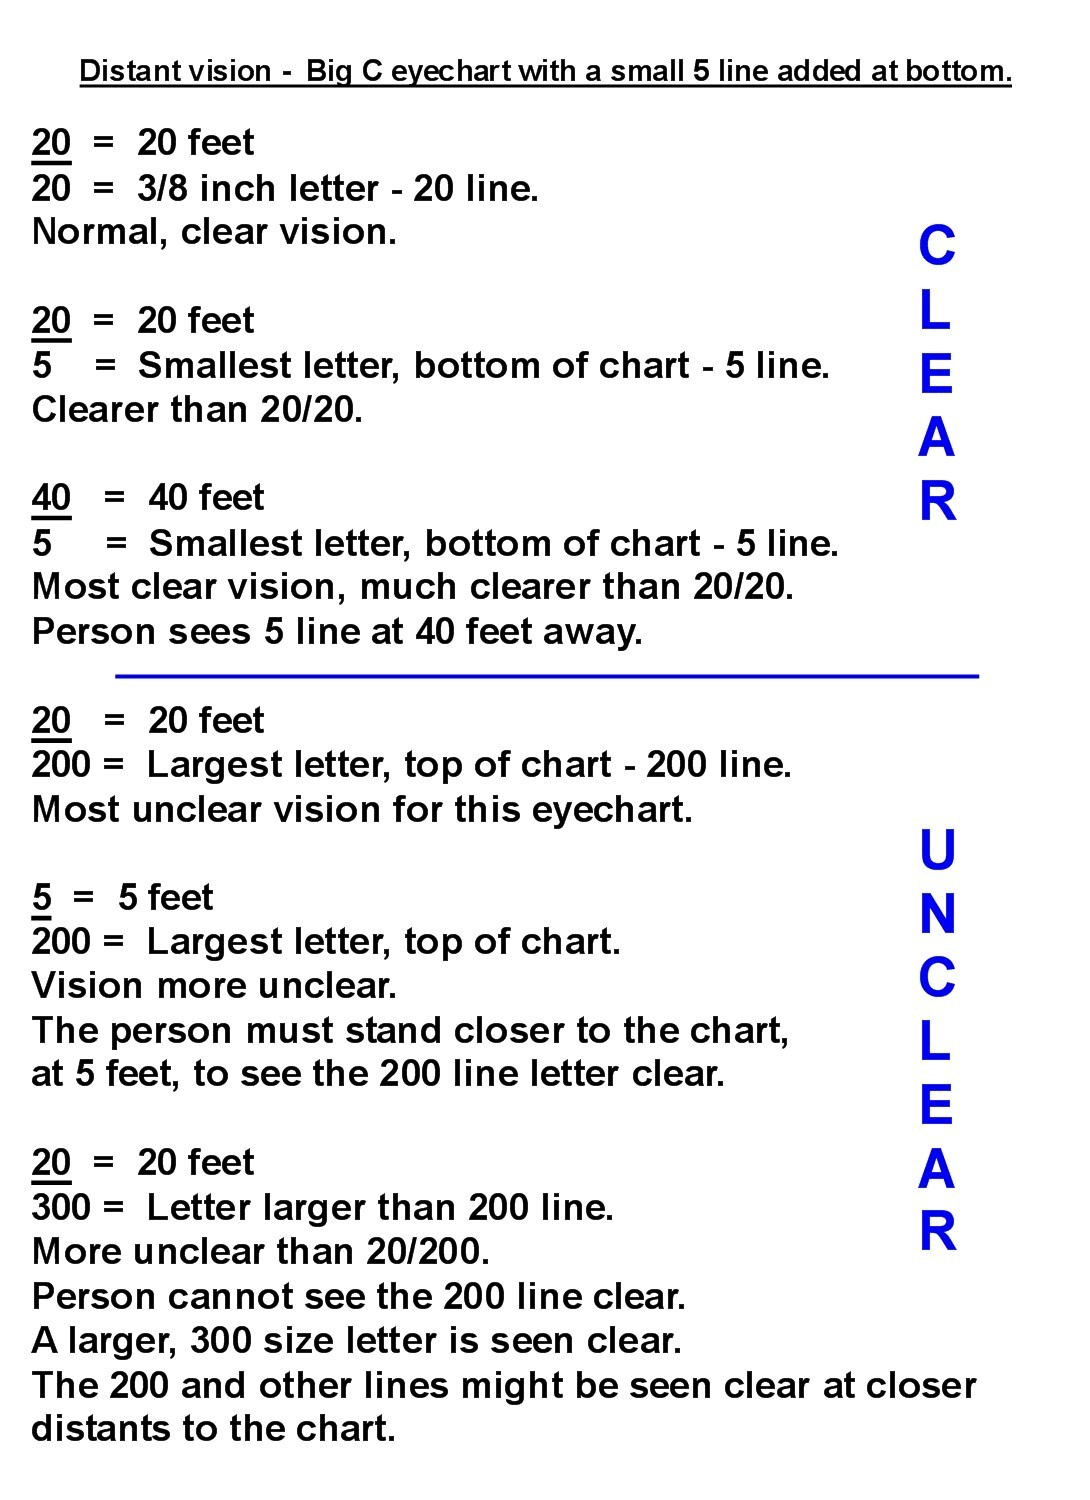 Snellen Letter Translucent 20' Eye Chart